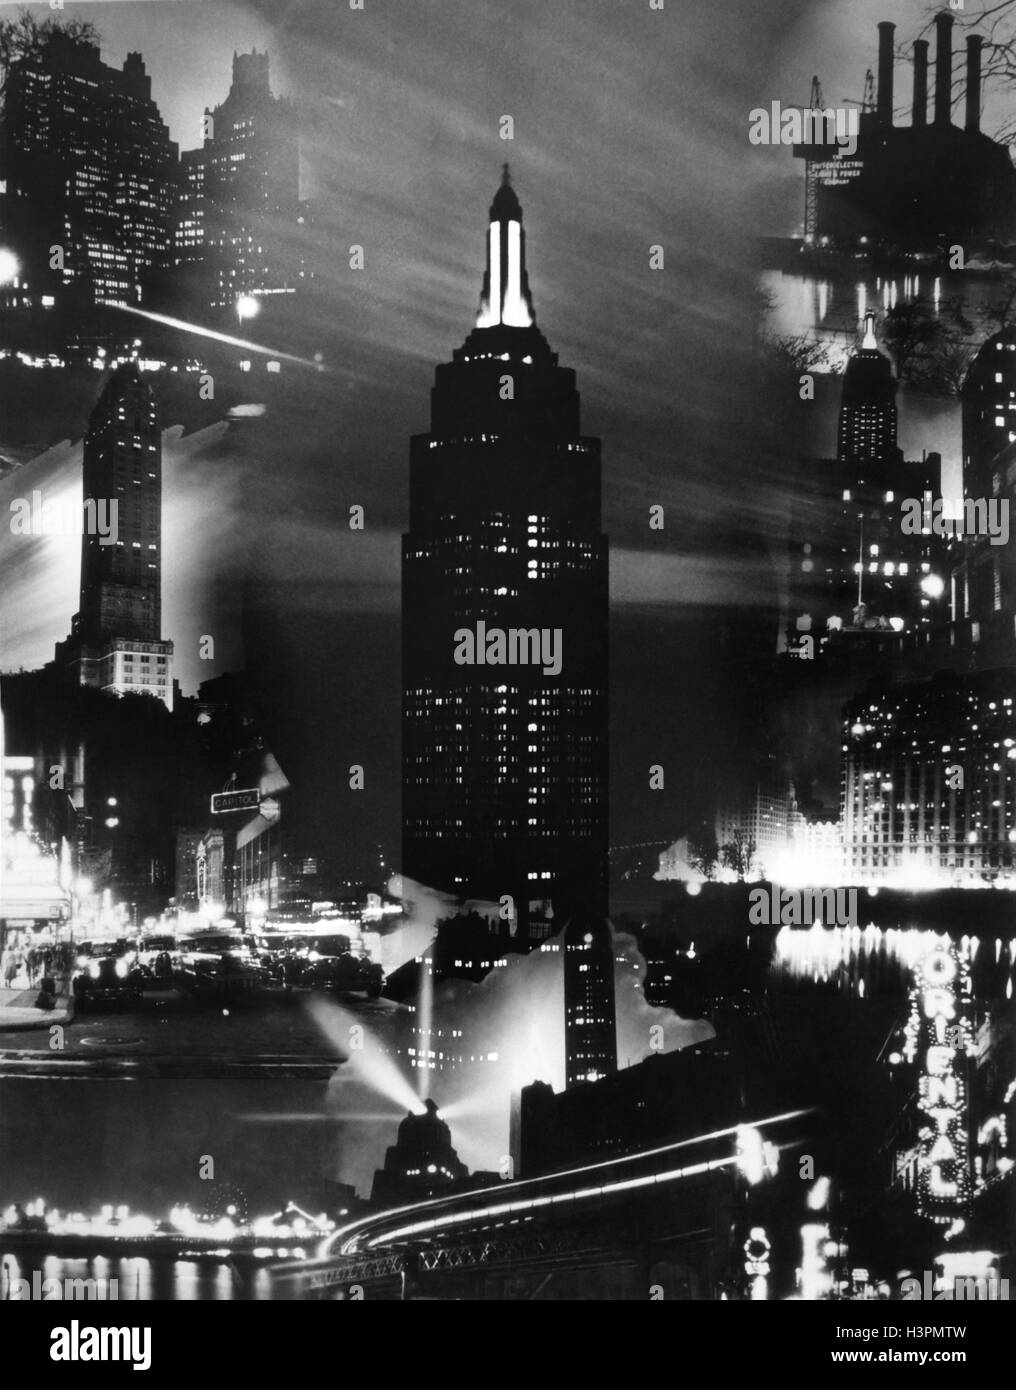 1930 MONTAGE DE BÂTIMENTS DE LA VILLE DE NEW YORK DANS LA NUIT AVEC UN EMPIRE STATE BUILDING DANS LE CENTRE Banque D'Images